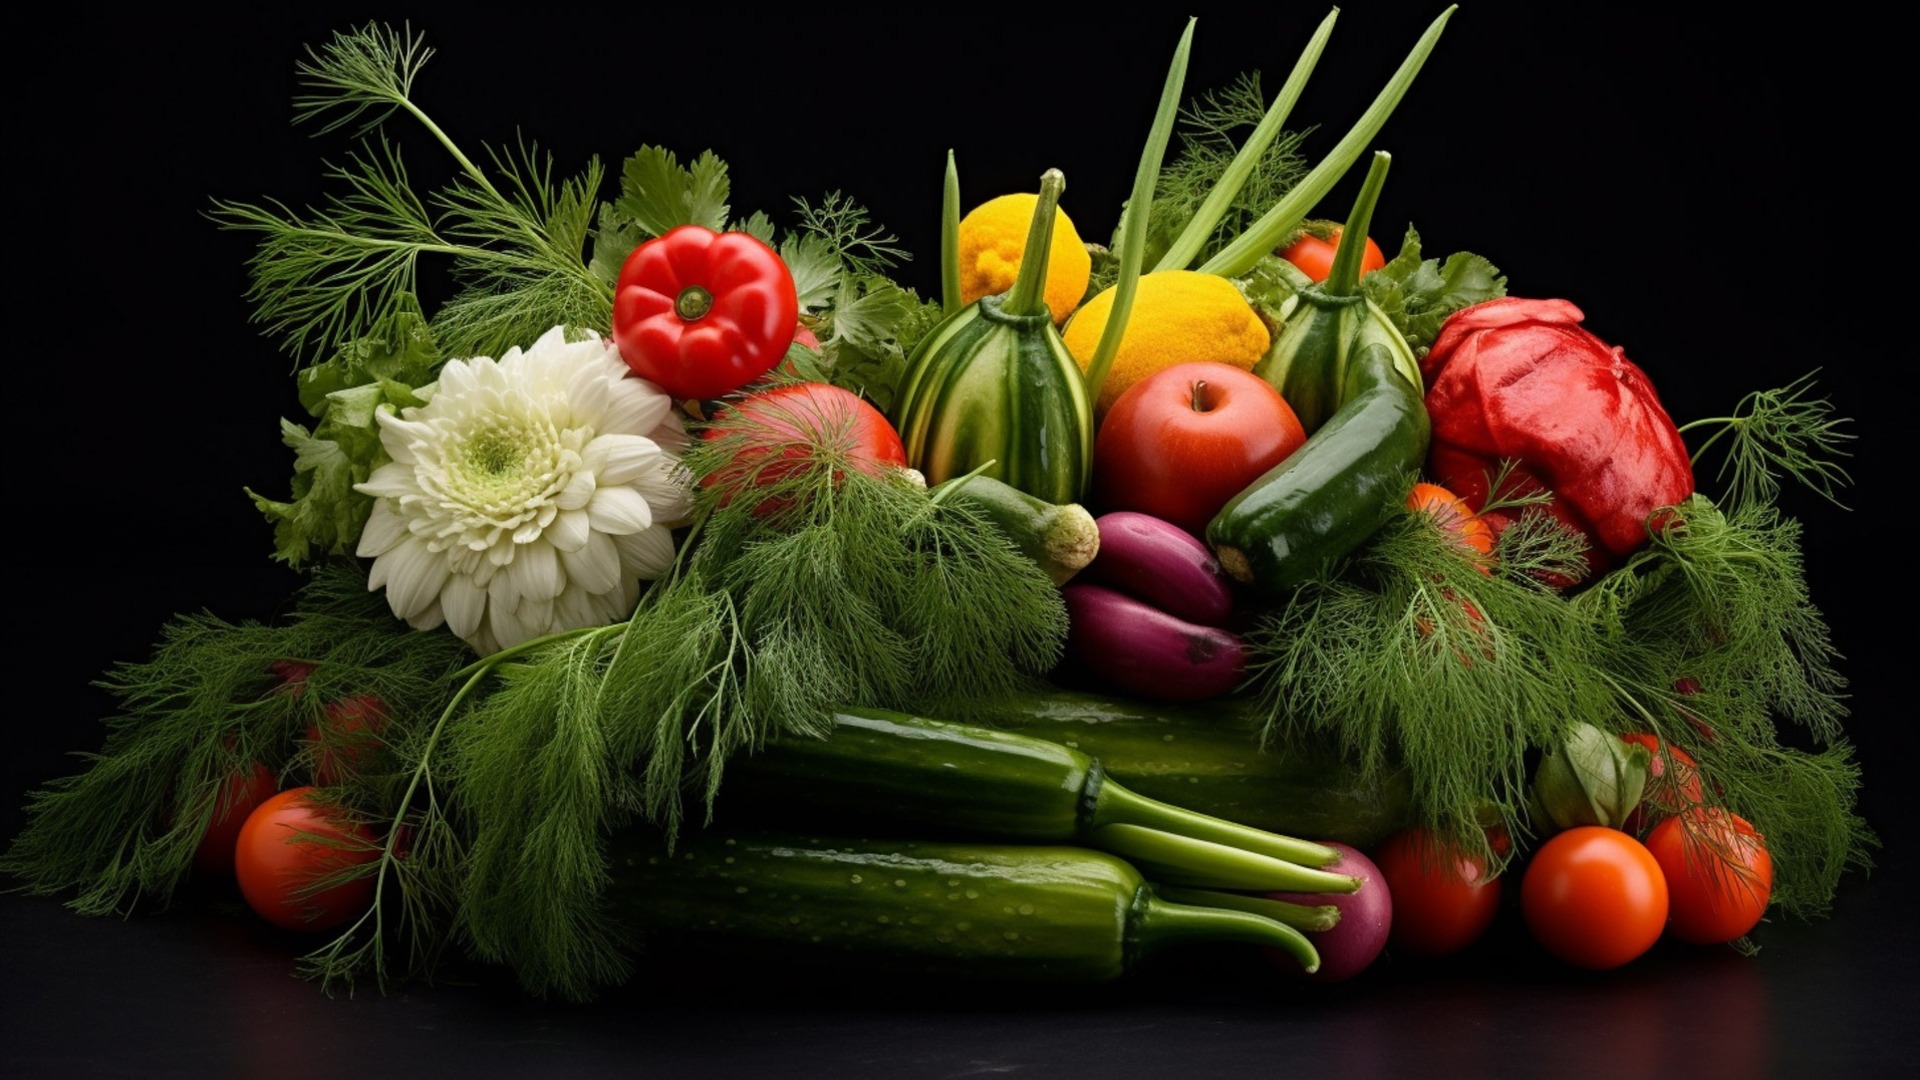 Дальневосточные регионы поставят свежие фрукты и овощи в Приморье